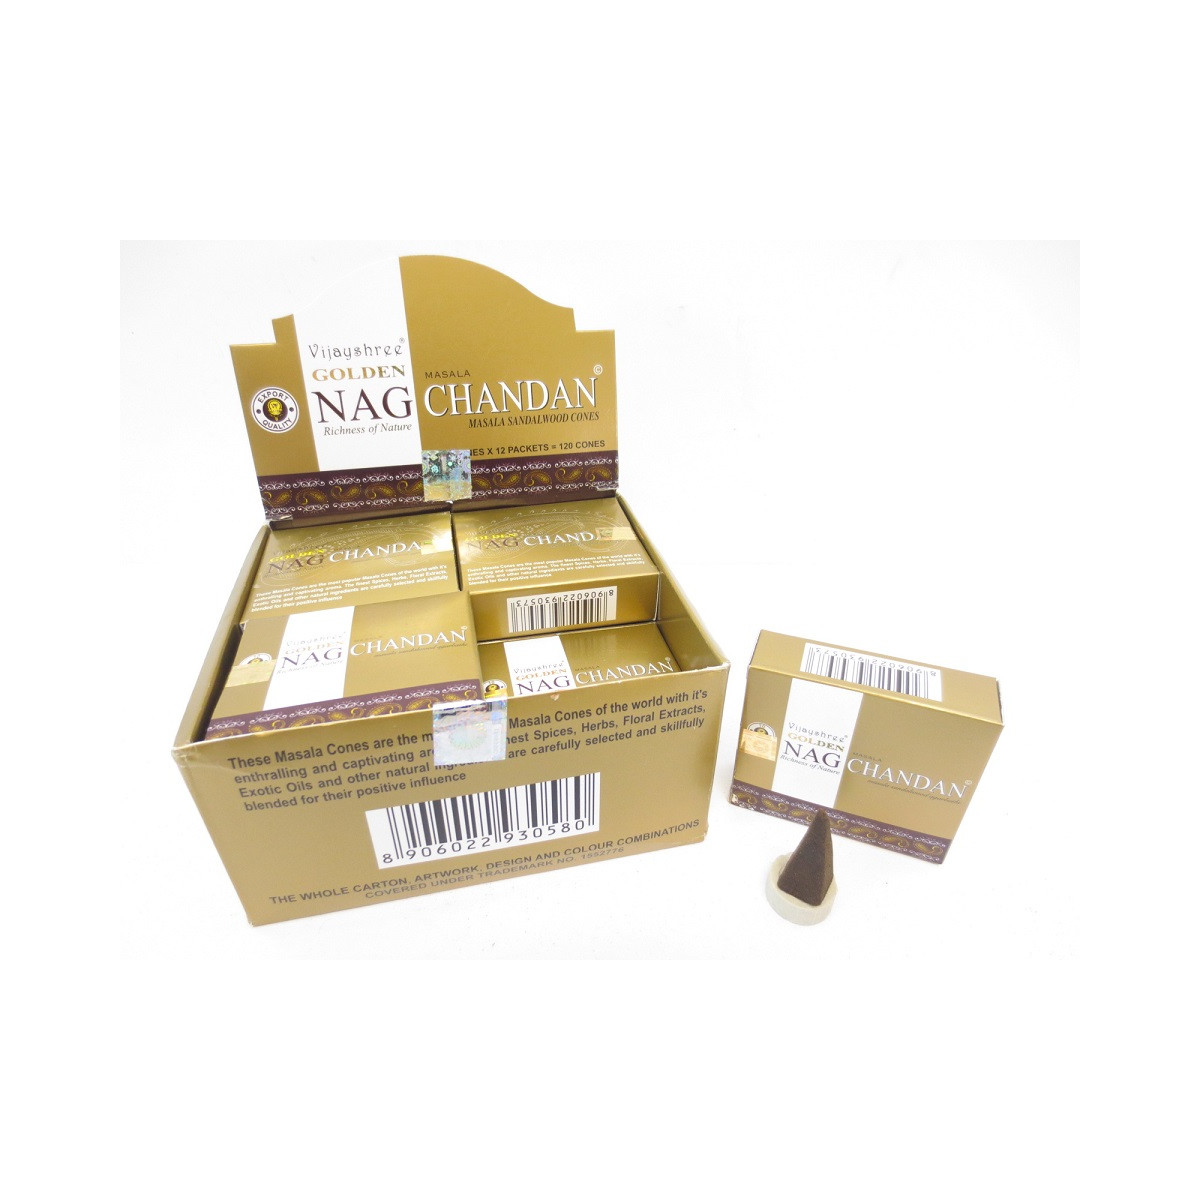 Golden Nag Chandan Räucherkegel Schachtel mit 10 Kegel